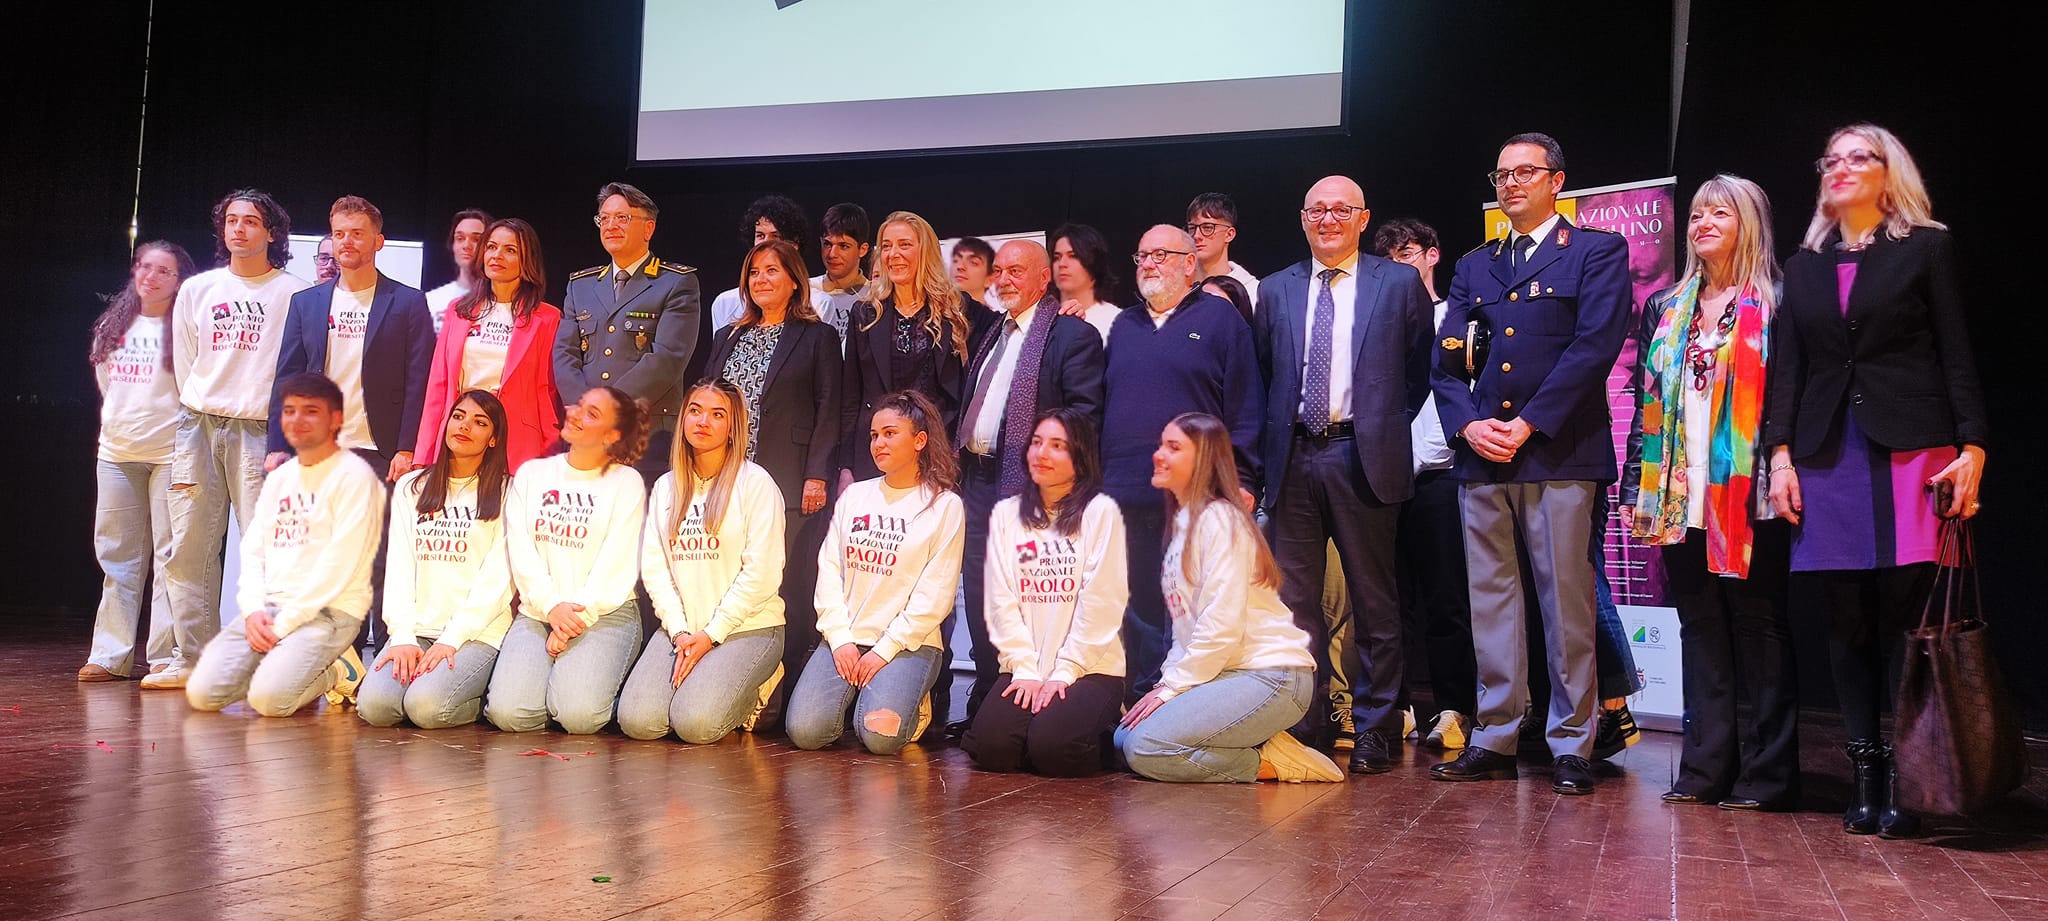 Giornata nazionale in ricordo delle vittime di mafia, incontro con gli studenti al Teatro Flaiano promosso dal Questore 